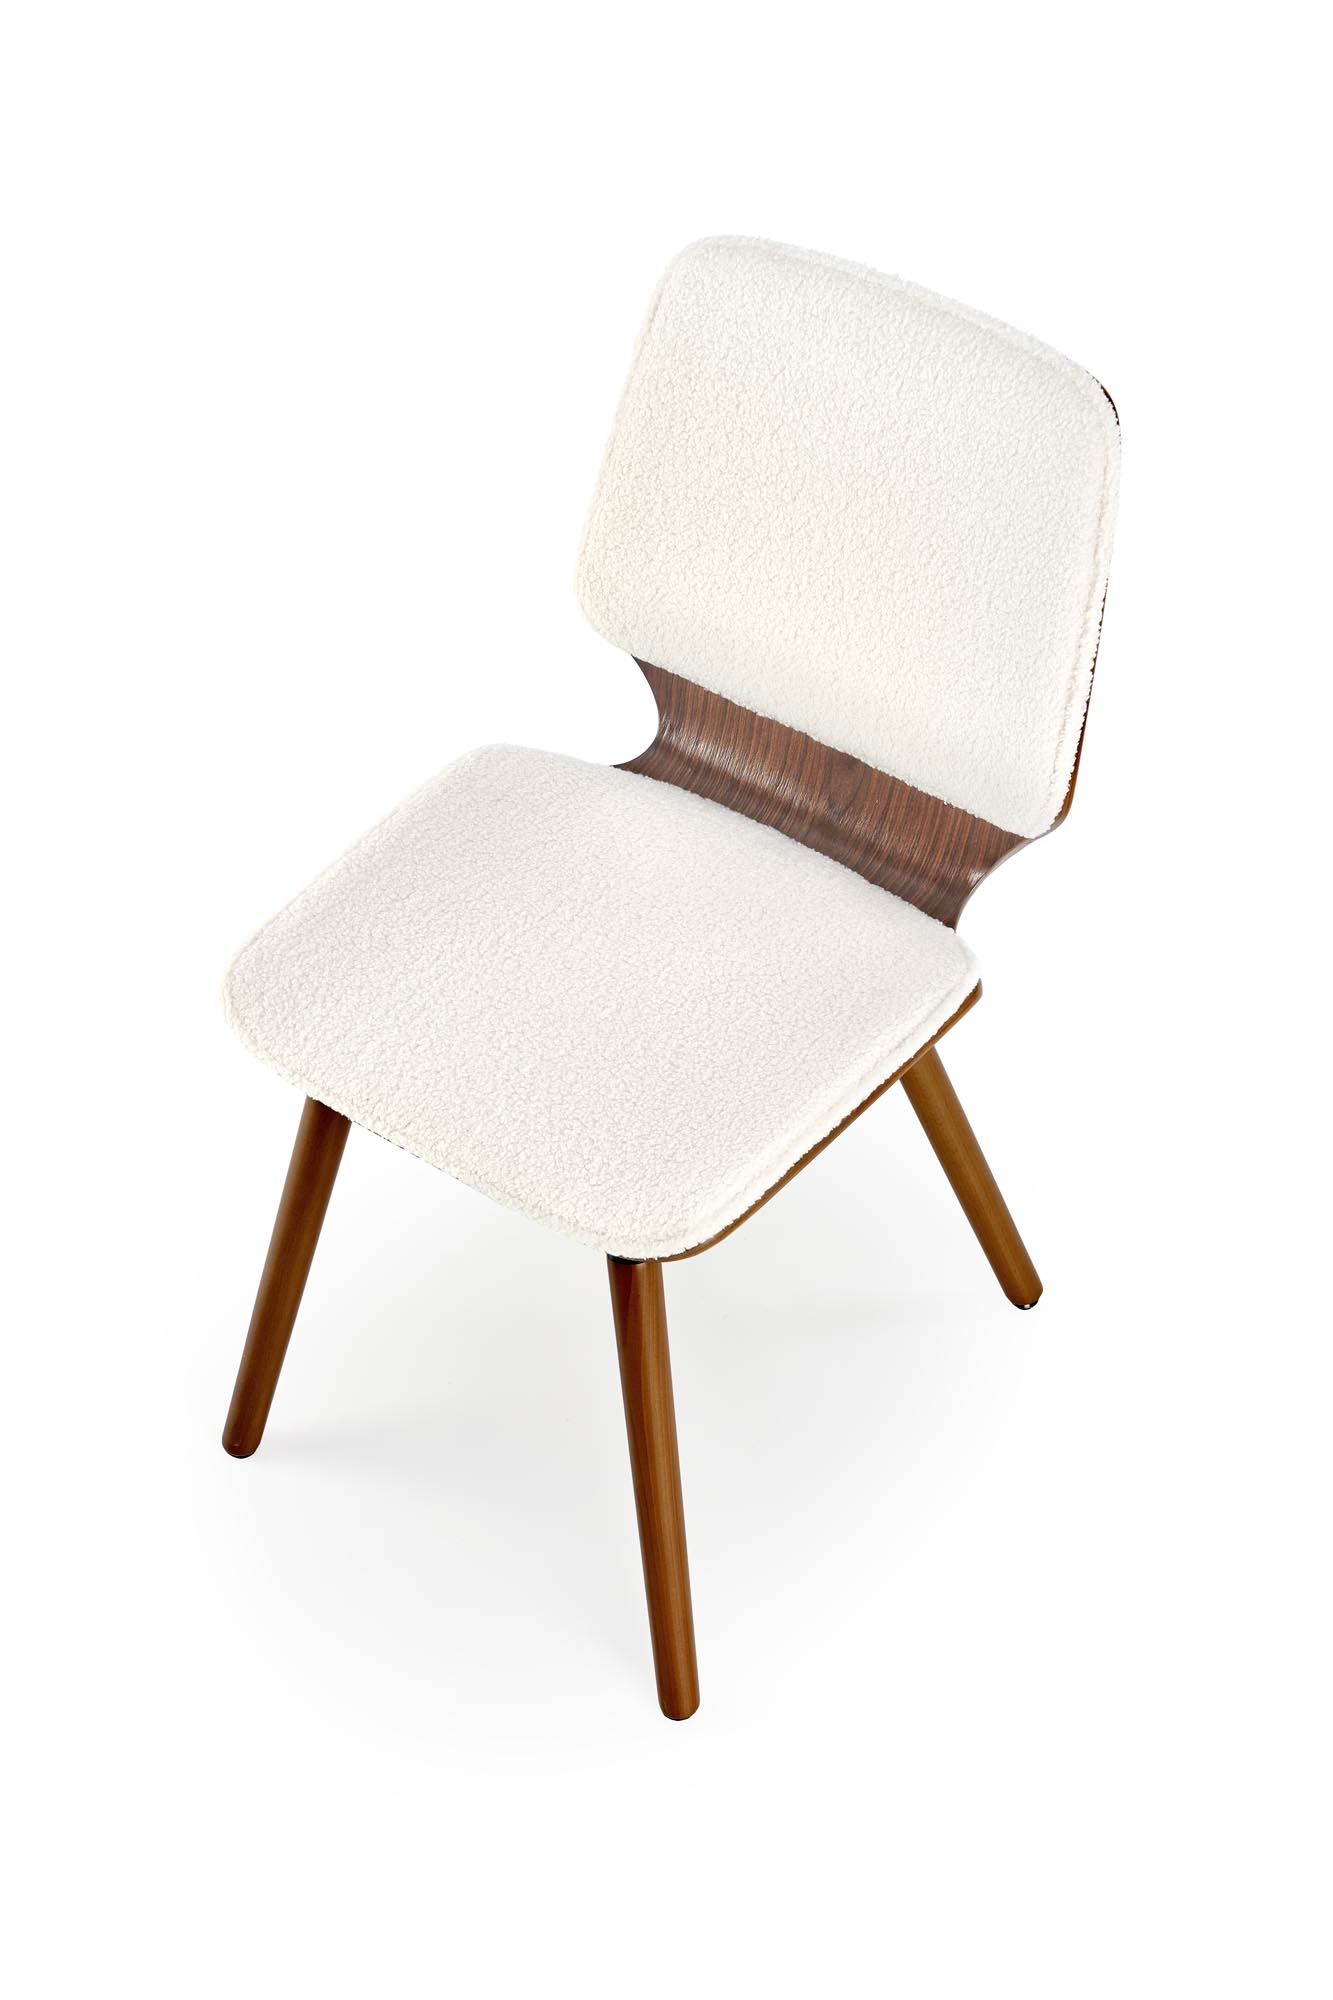 K511 Židle Krémový / ořechový Židle fából k511 - Krémový / ořechový